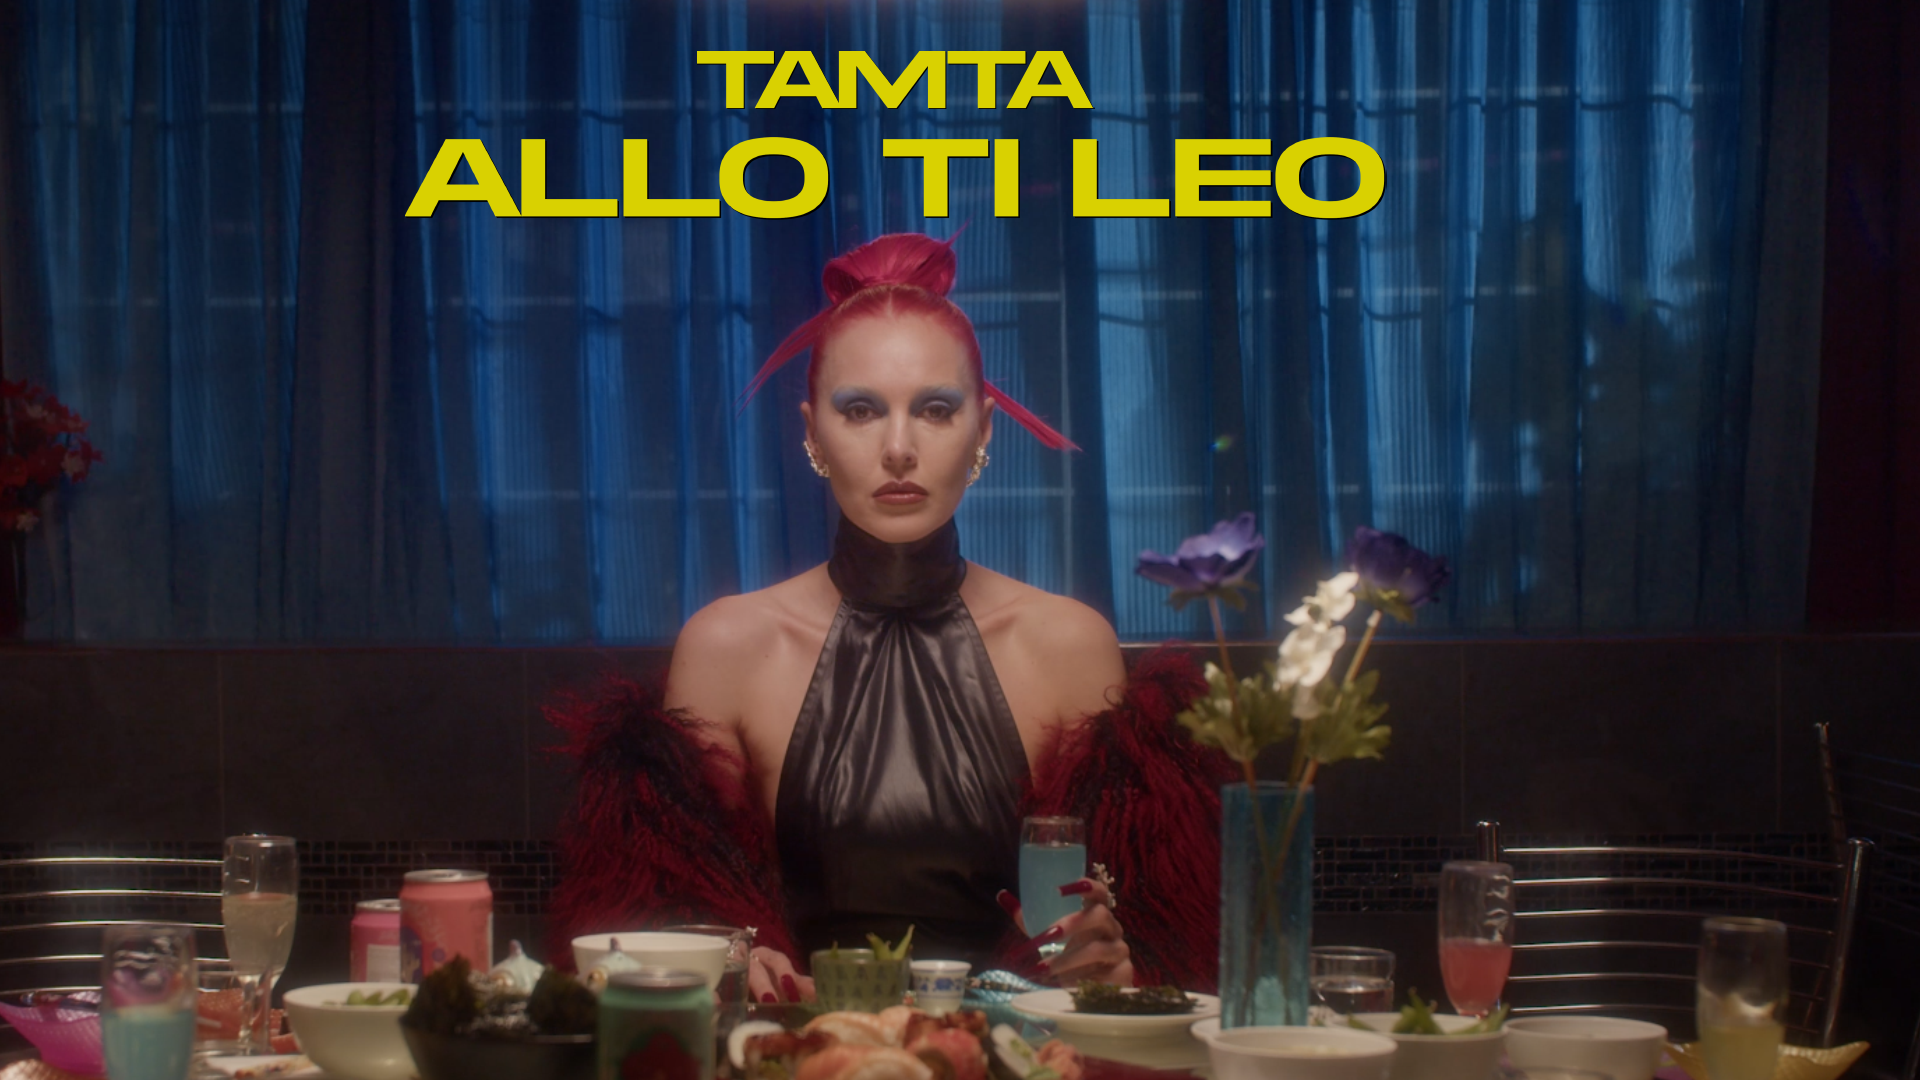 Load video: TAMTA - Allo Ti Leo - YouTube